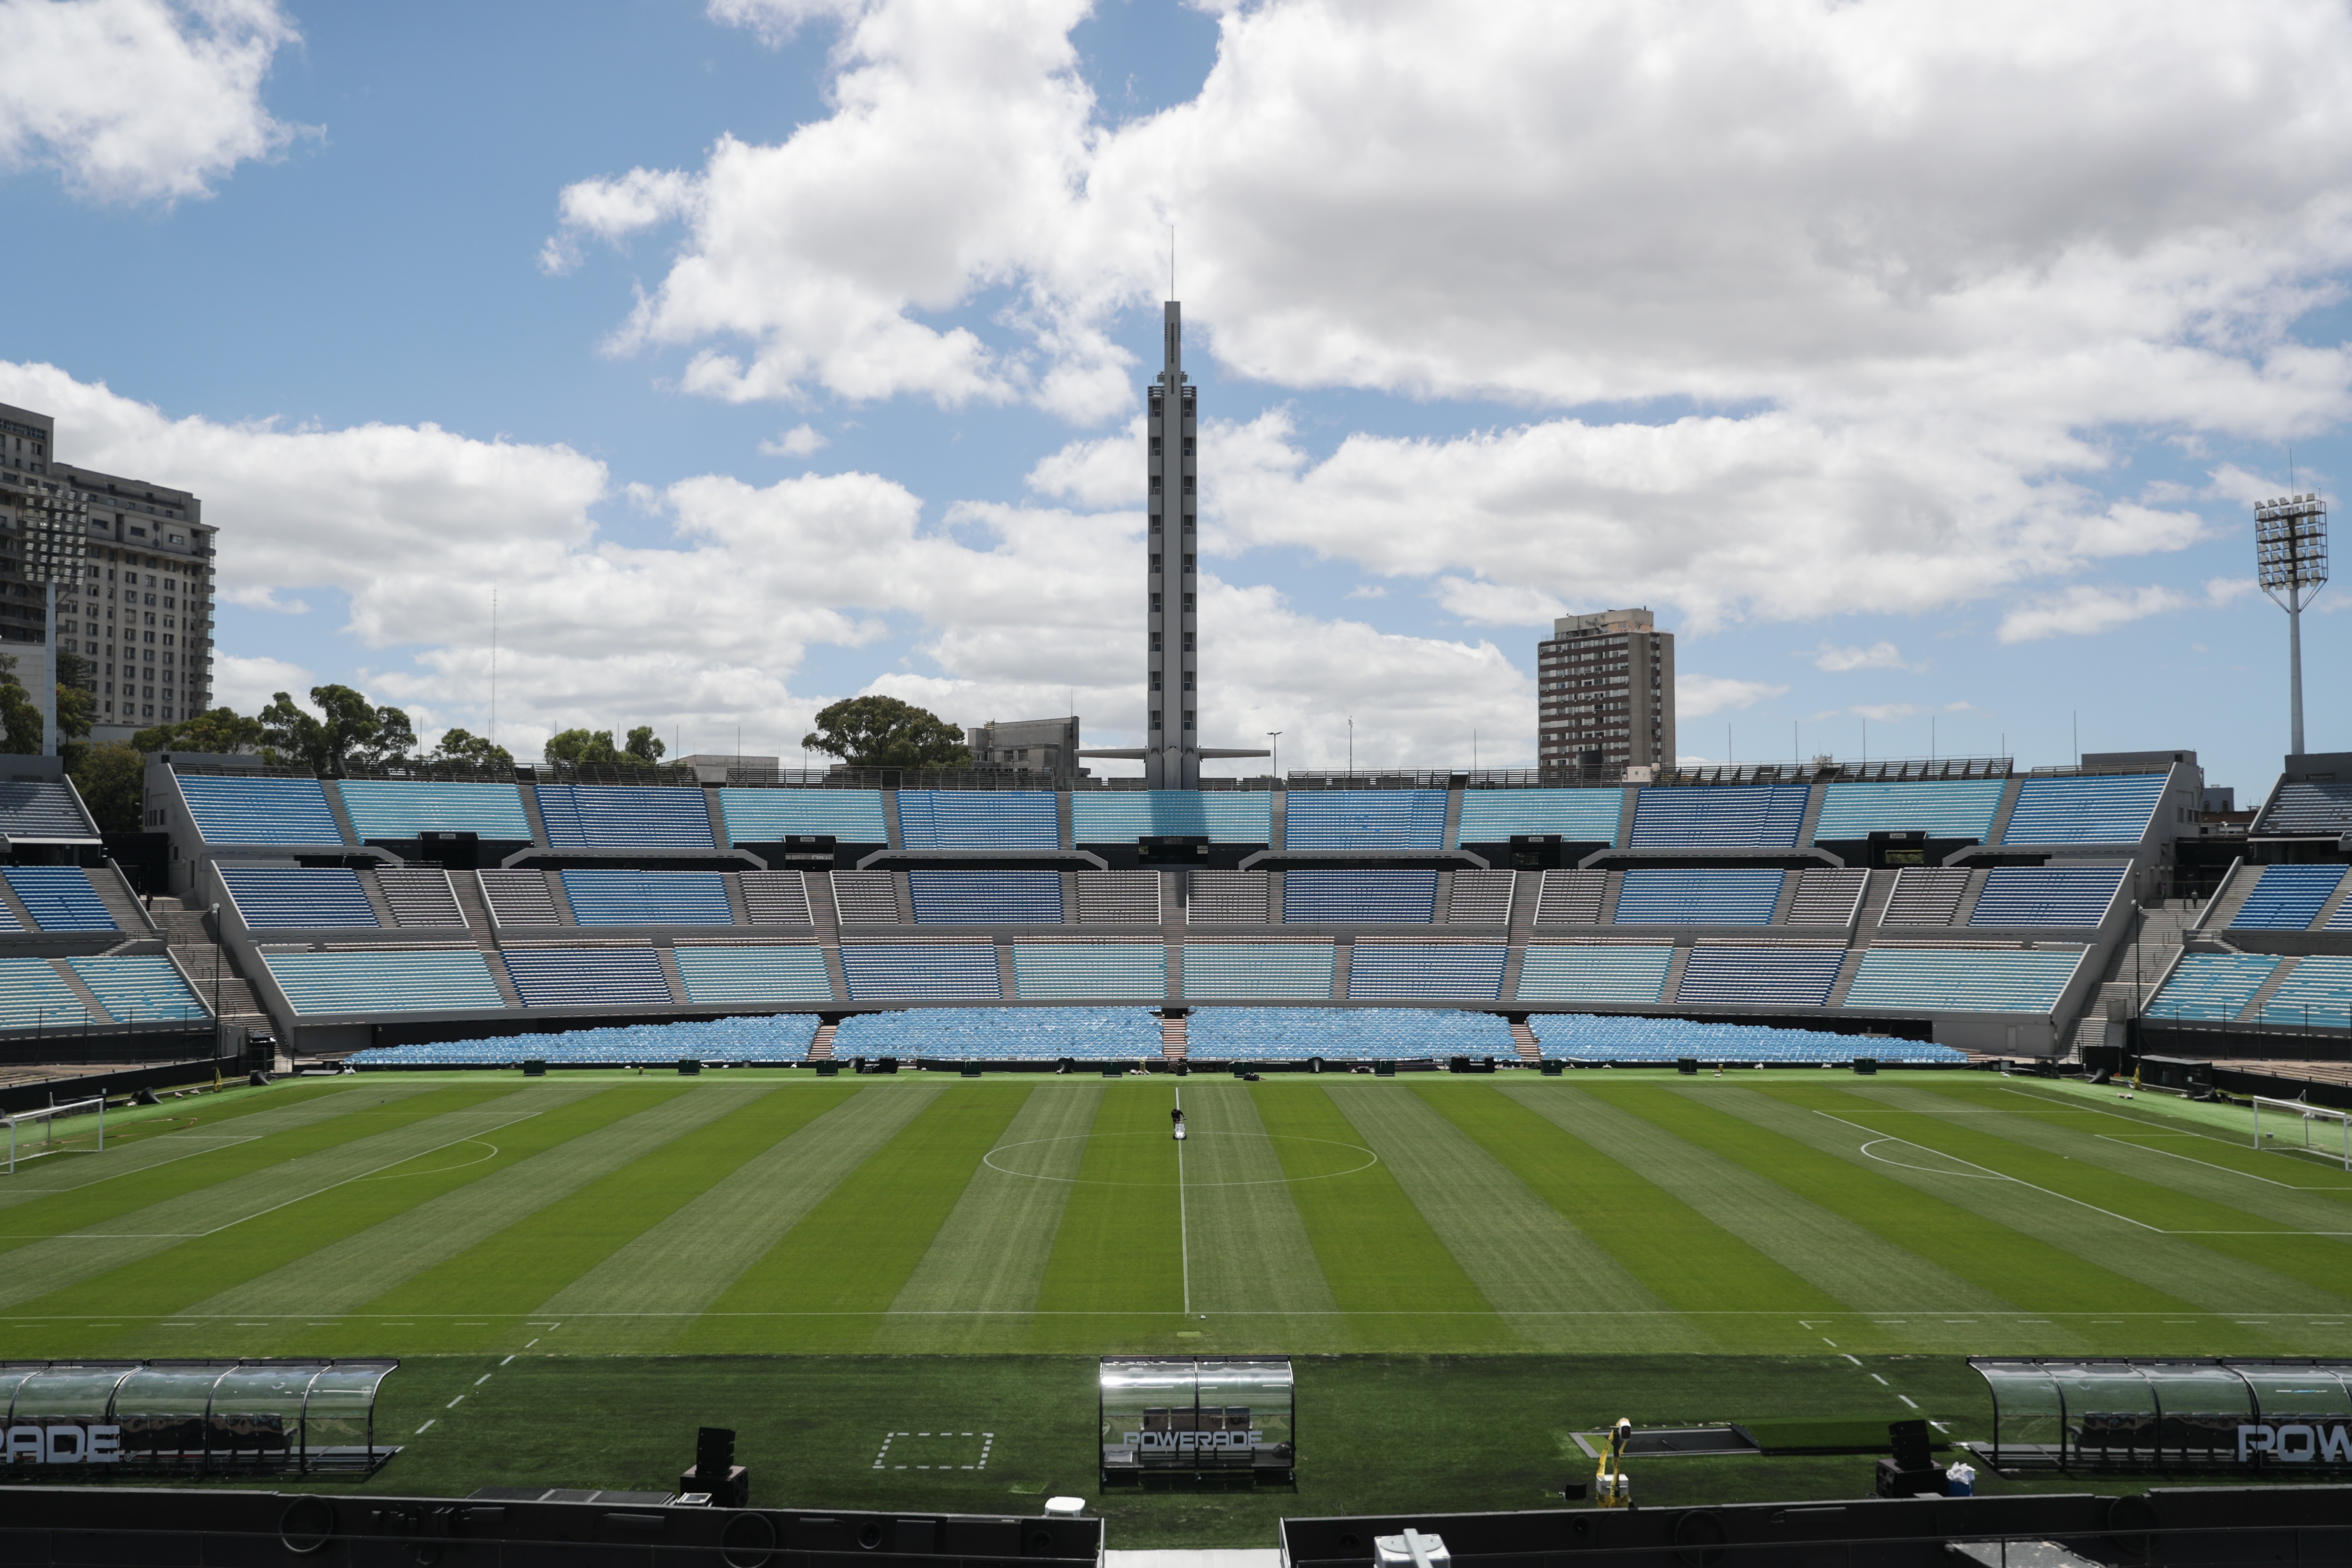 Vista del Estadio Centenario, lugar donde se jugó la primer final de la Copa del Mundo